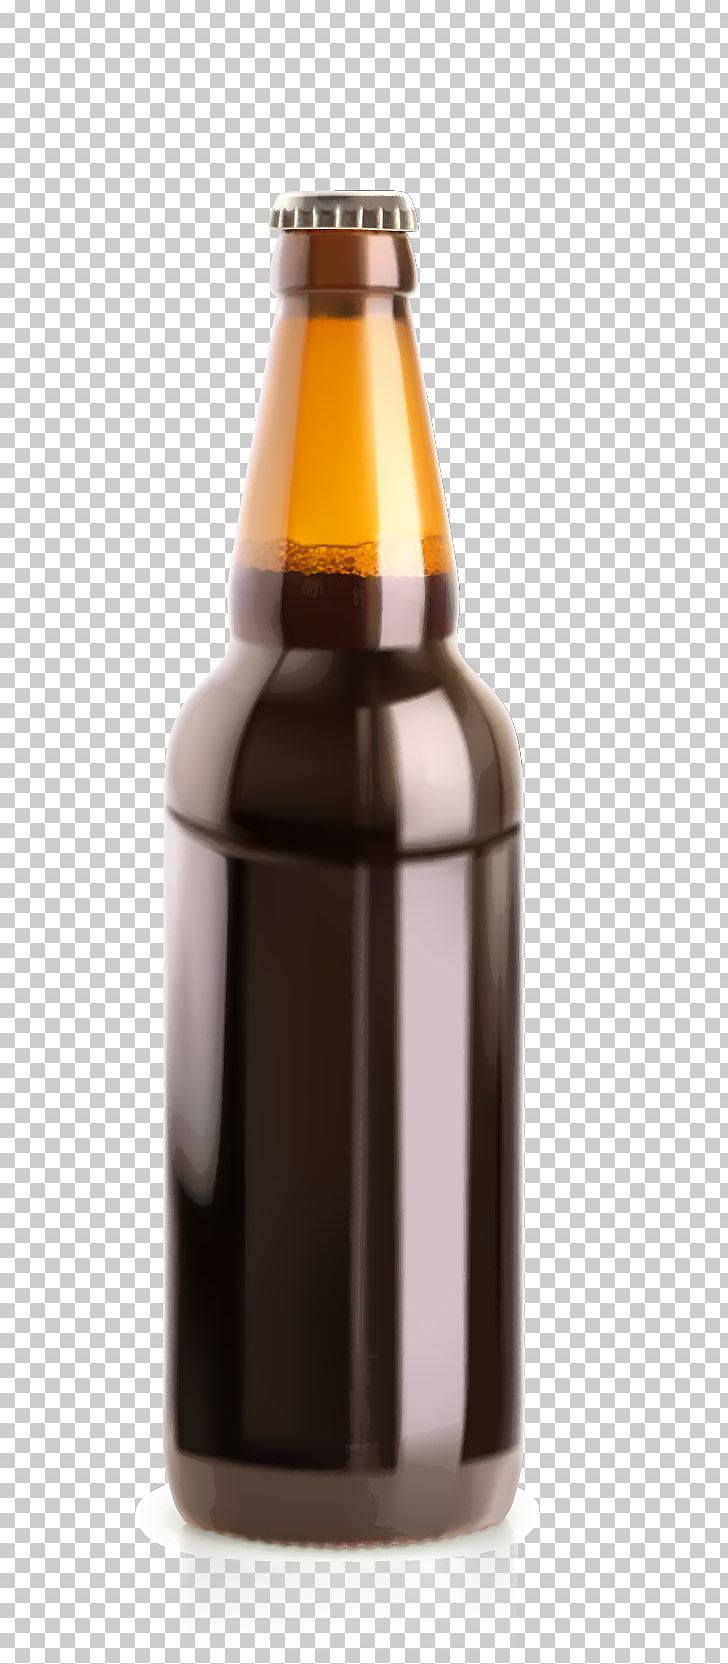 Beer Bottle Glass Illustration PNG, Clipart, Alcohol Bottle, Alcoholic Beverage, Beer, Beer Glassware, Bottle Free PNG Download